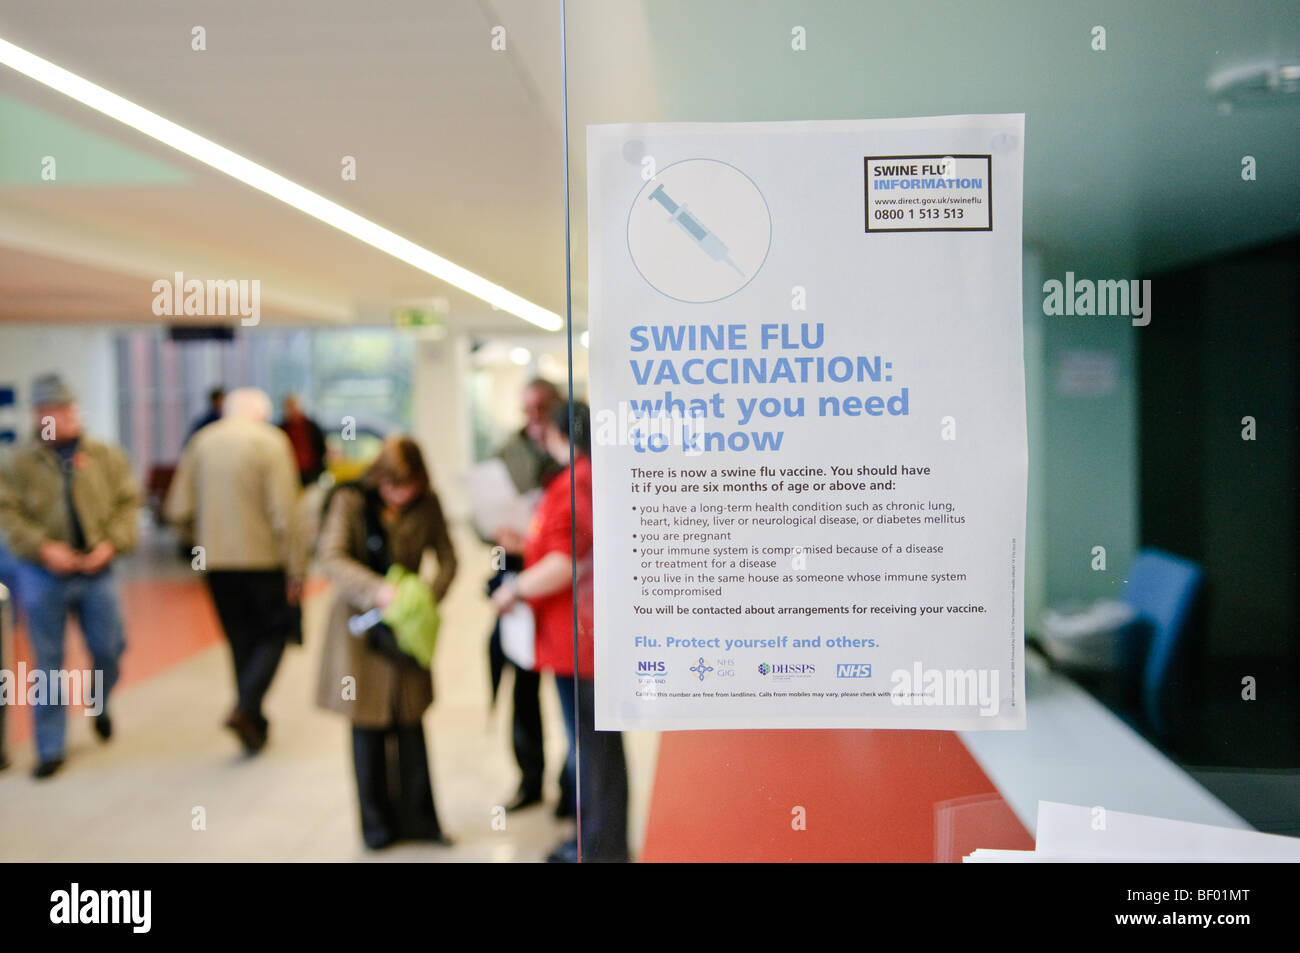 Affiches d'information sur la grippe porcine sur l'affichage à un GP La chirurgie dans l'Irlande du Nord. Banque D'Images